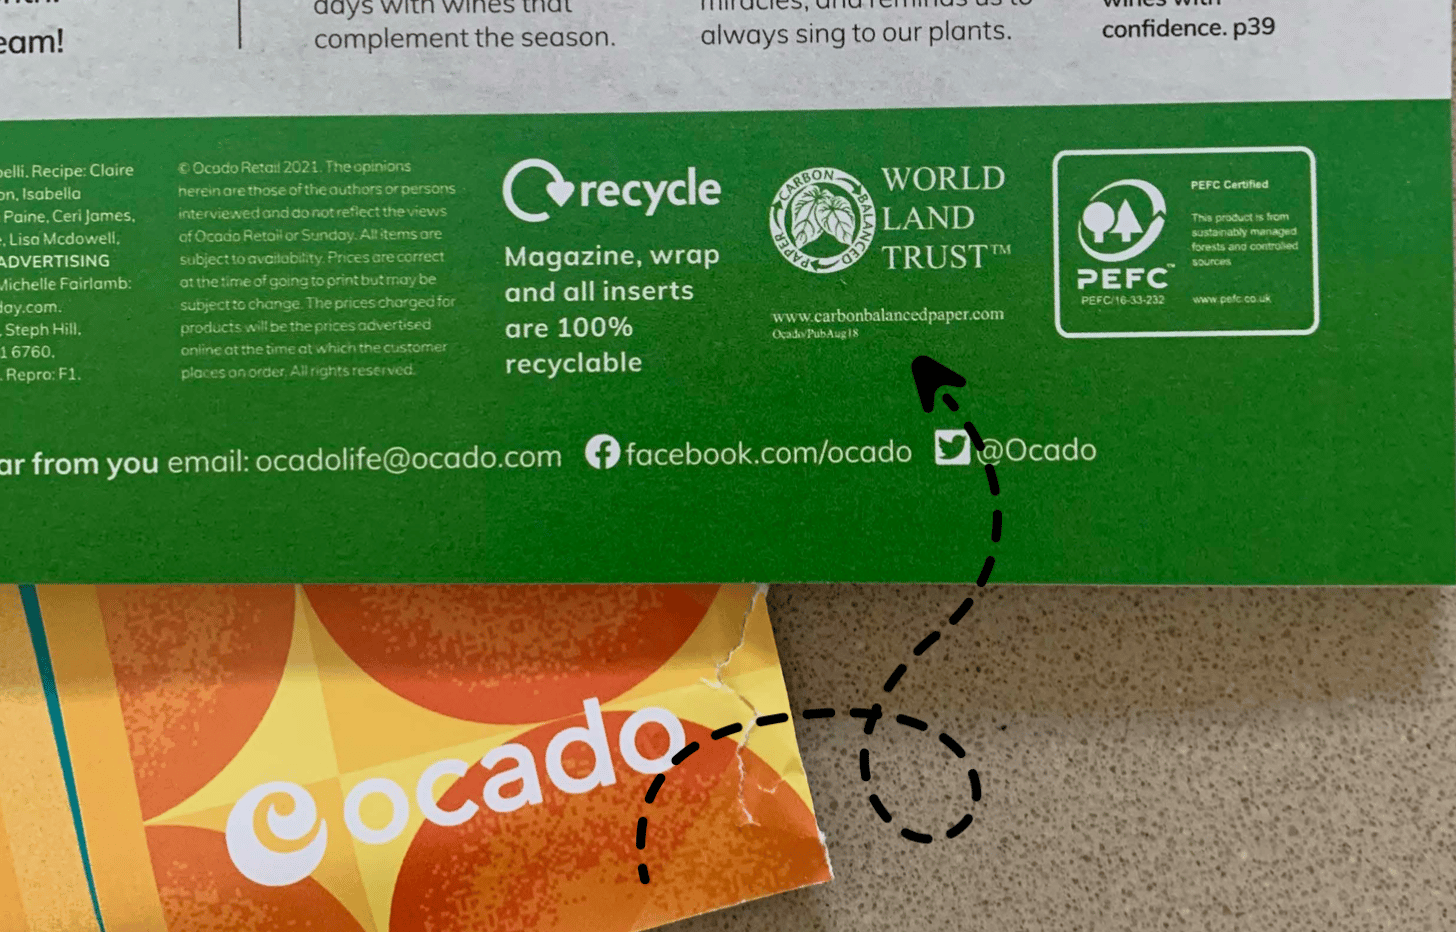 Ocado has ambitious environmental targets